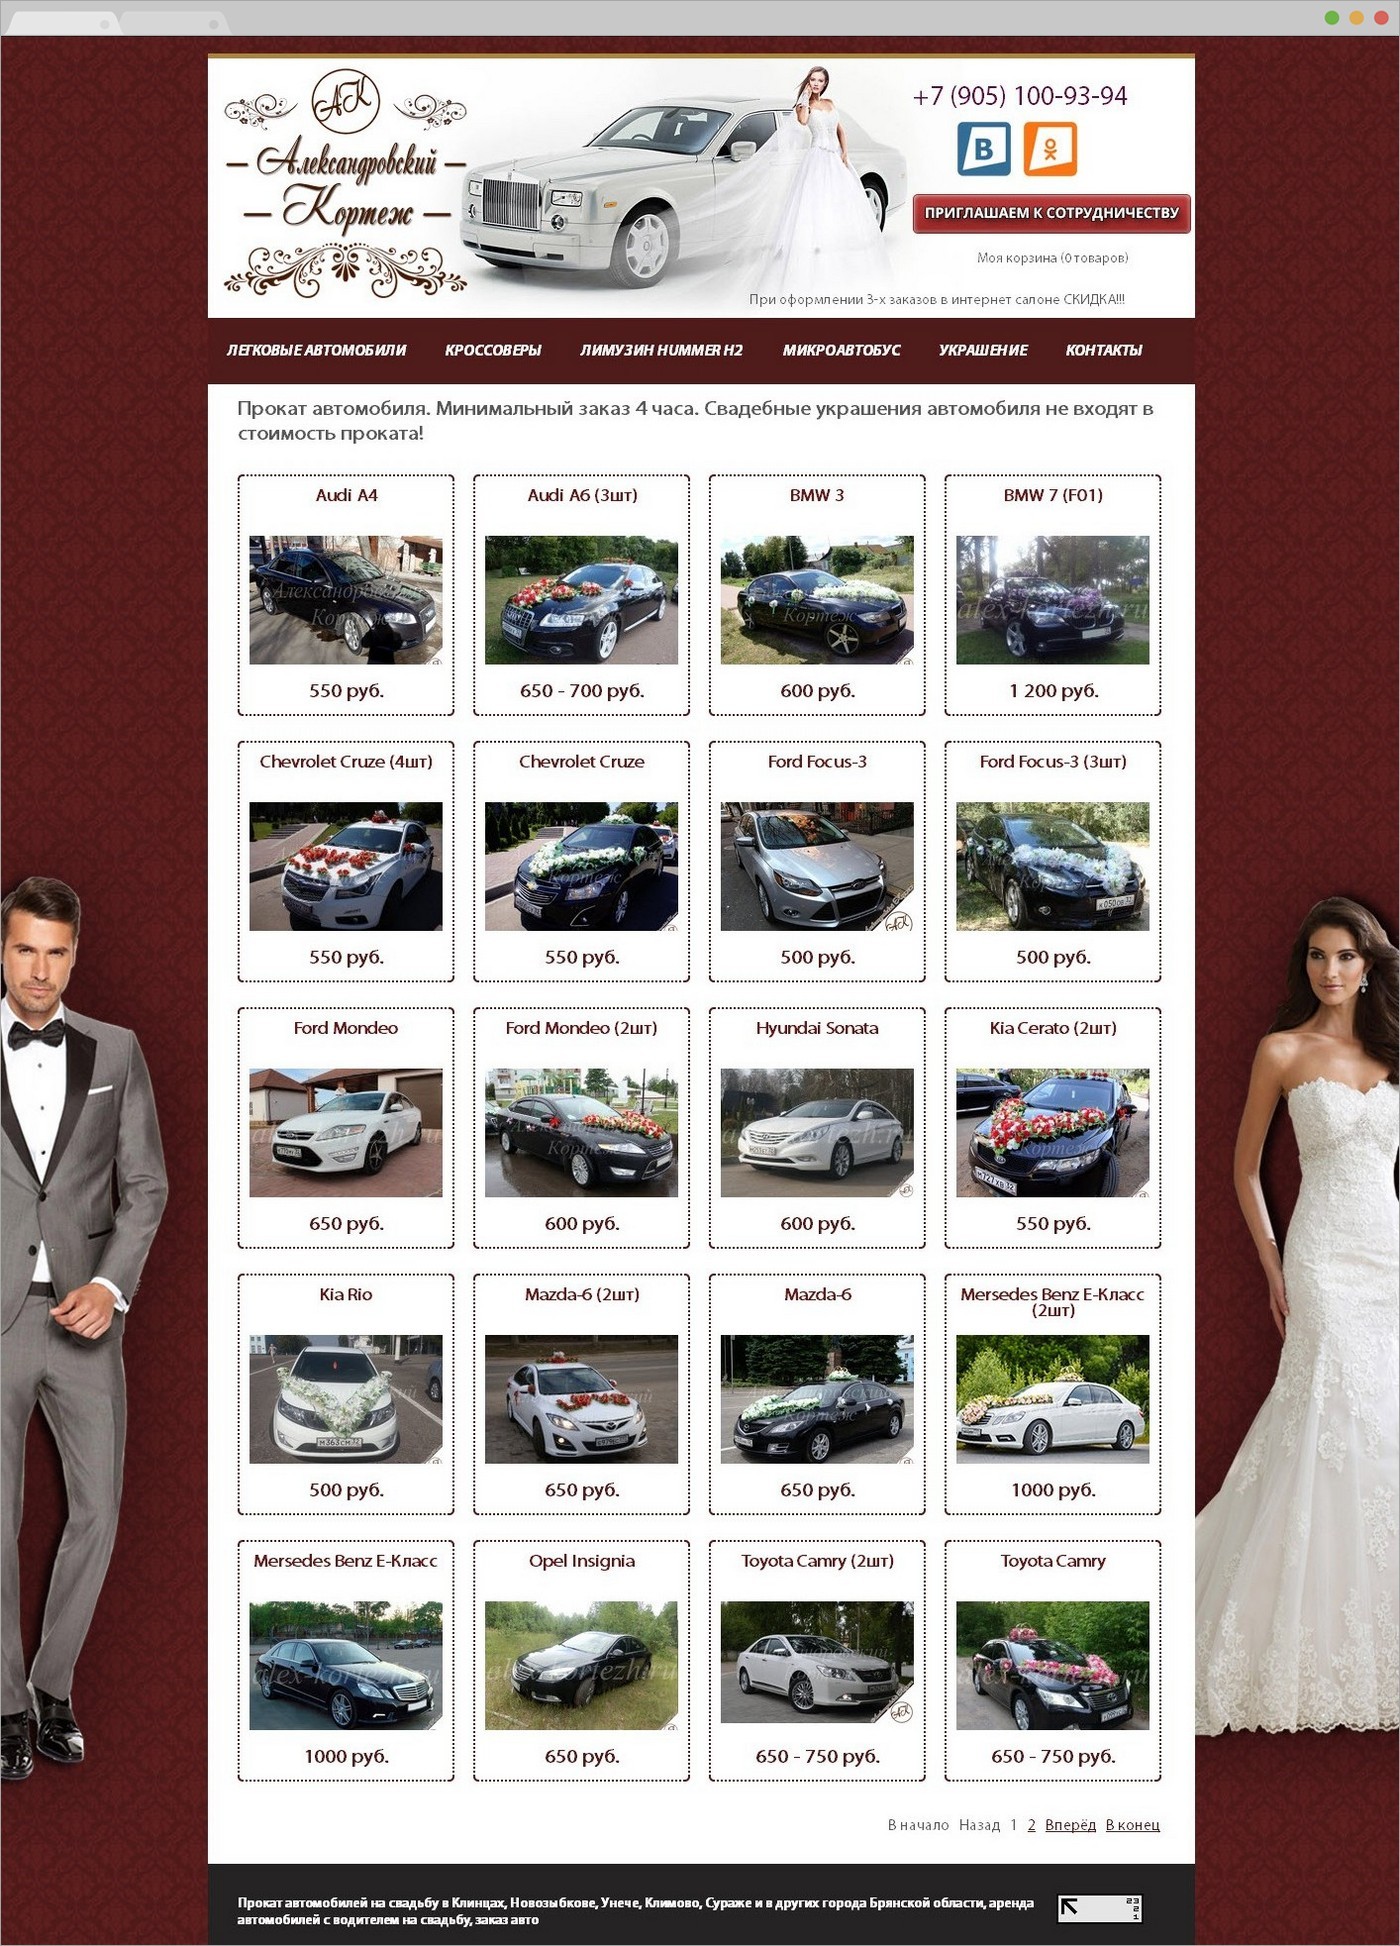 Создание сайта - Александровский Кортеж - прокат автомобилей на свадьбу